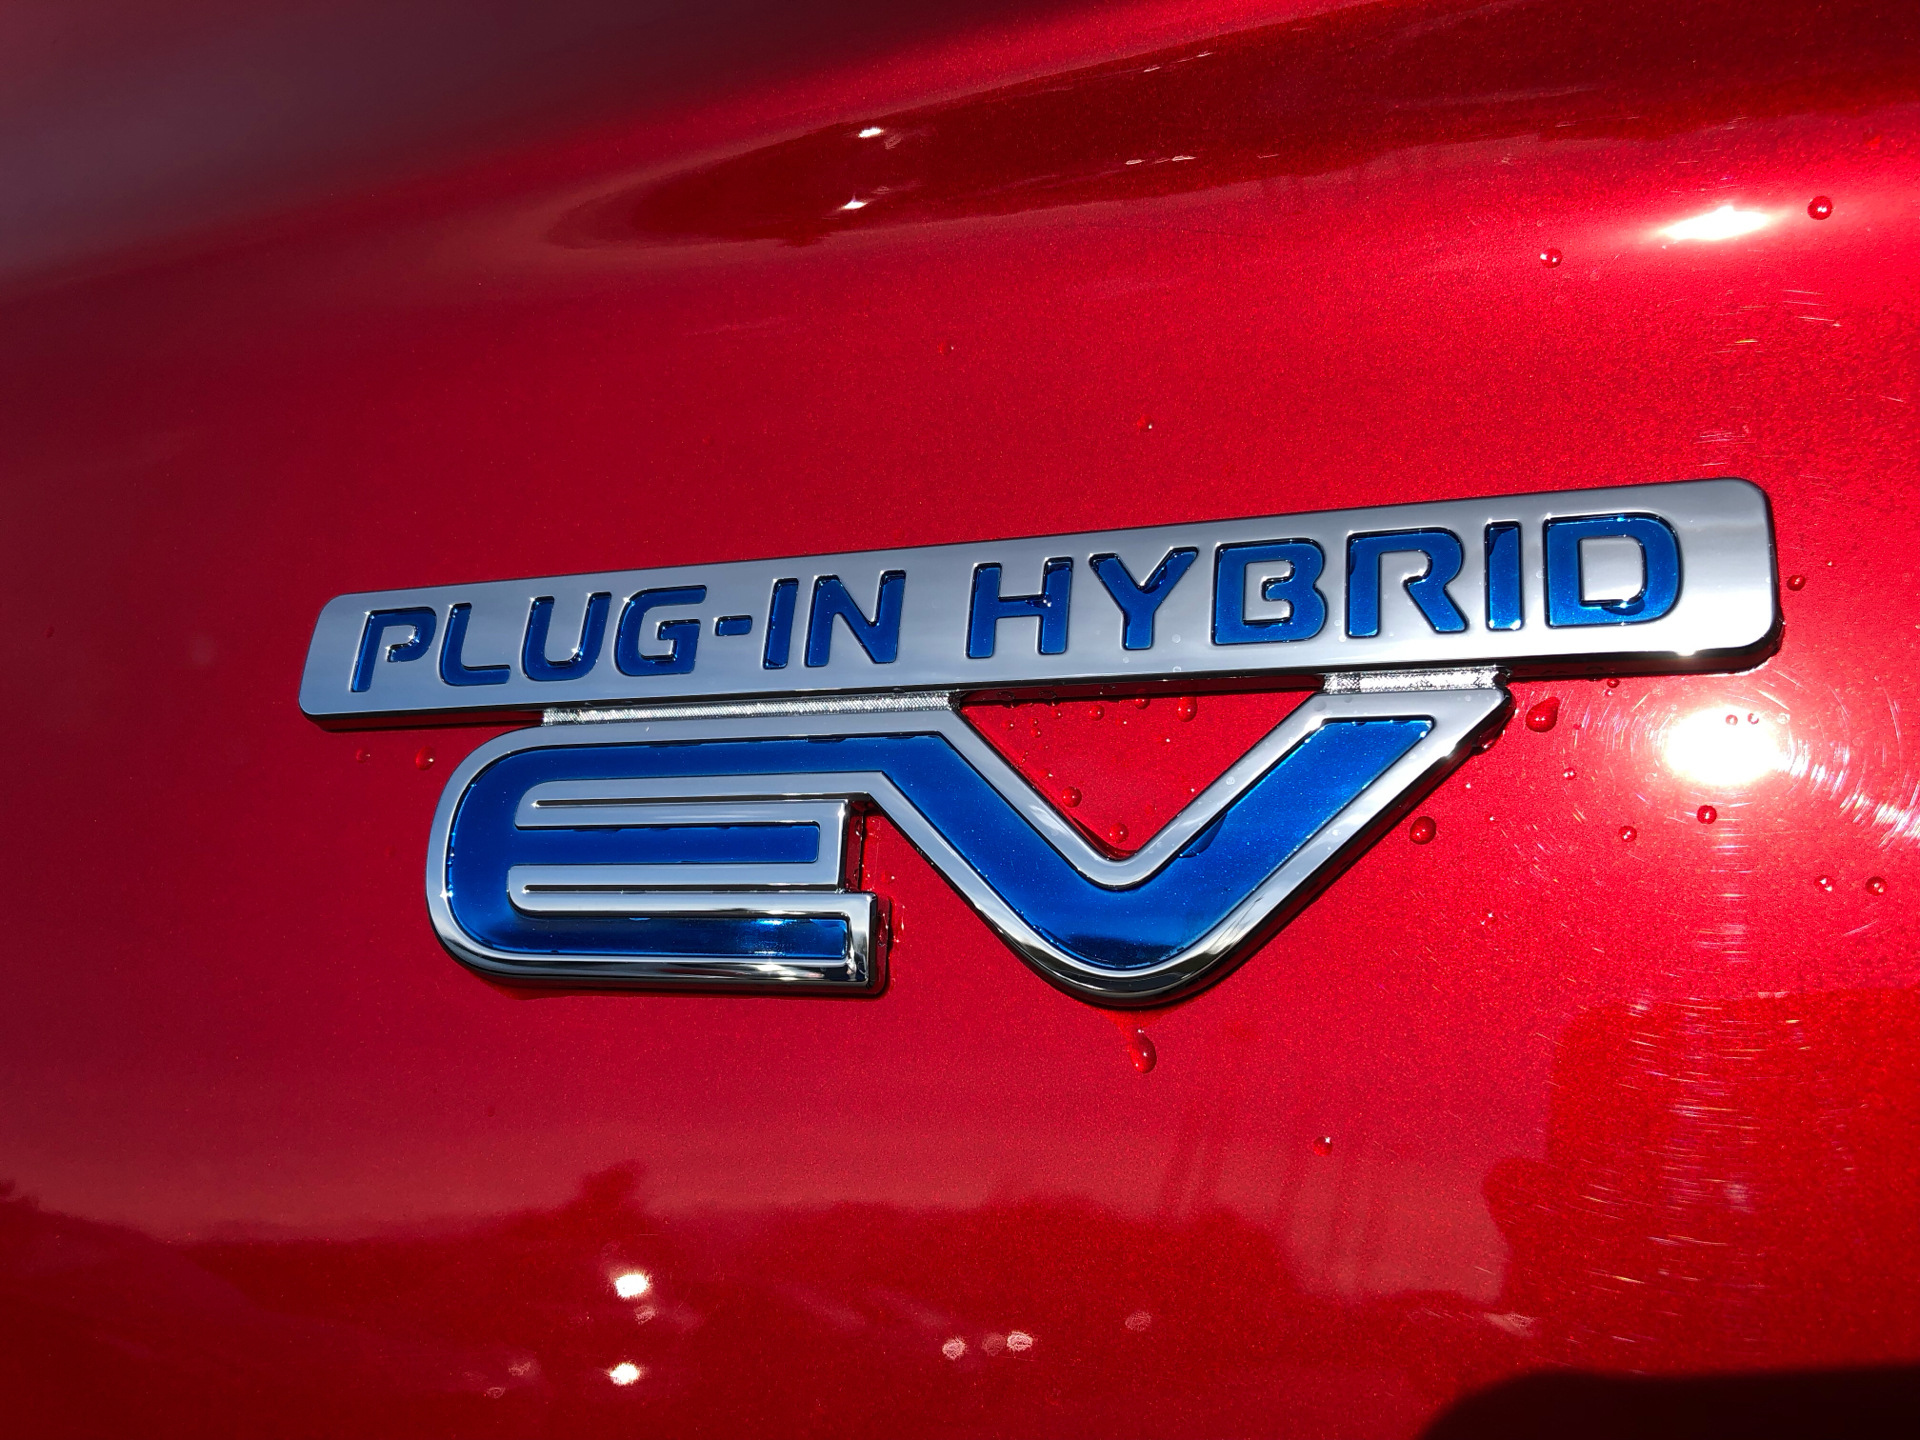 Billede af Mitsubishi Outlander 2,4 PHEV  Plugin-hybrid Intense 4WD 224HK 5d 6g Trinl. Gear